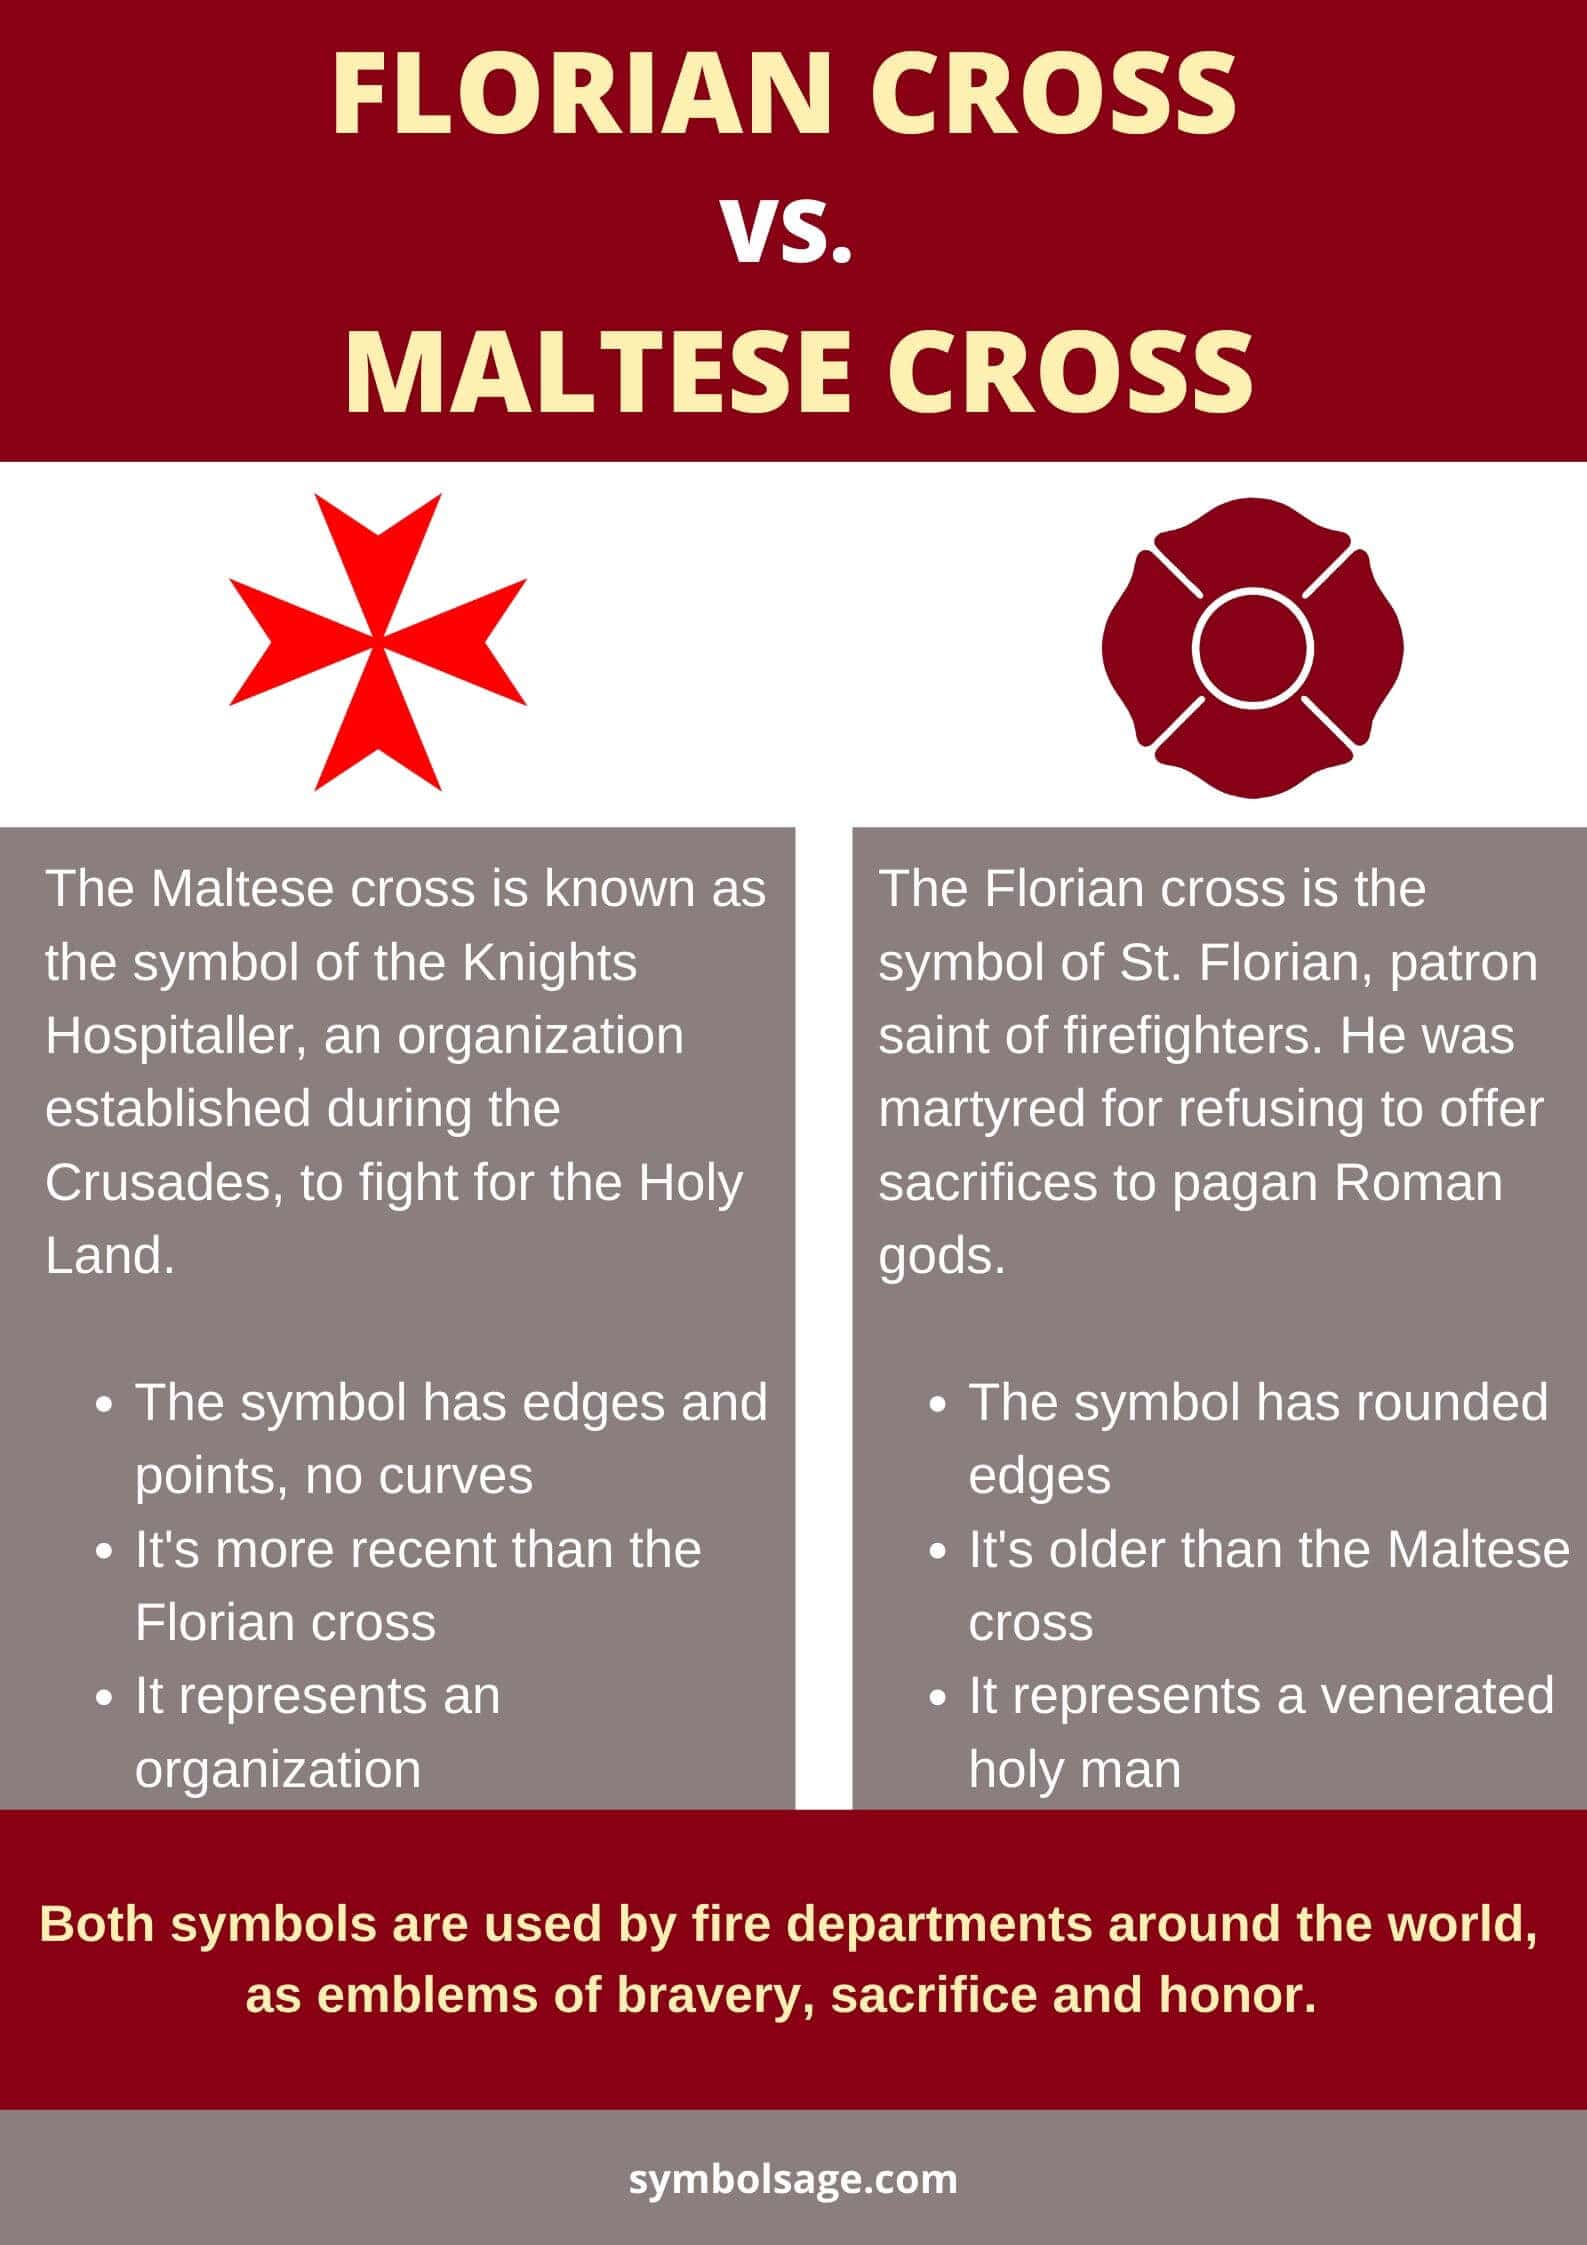 Florian cross vs. Maltese cross